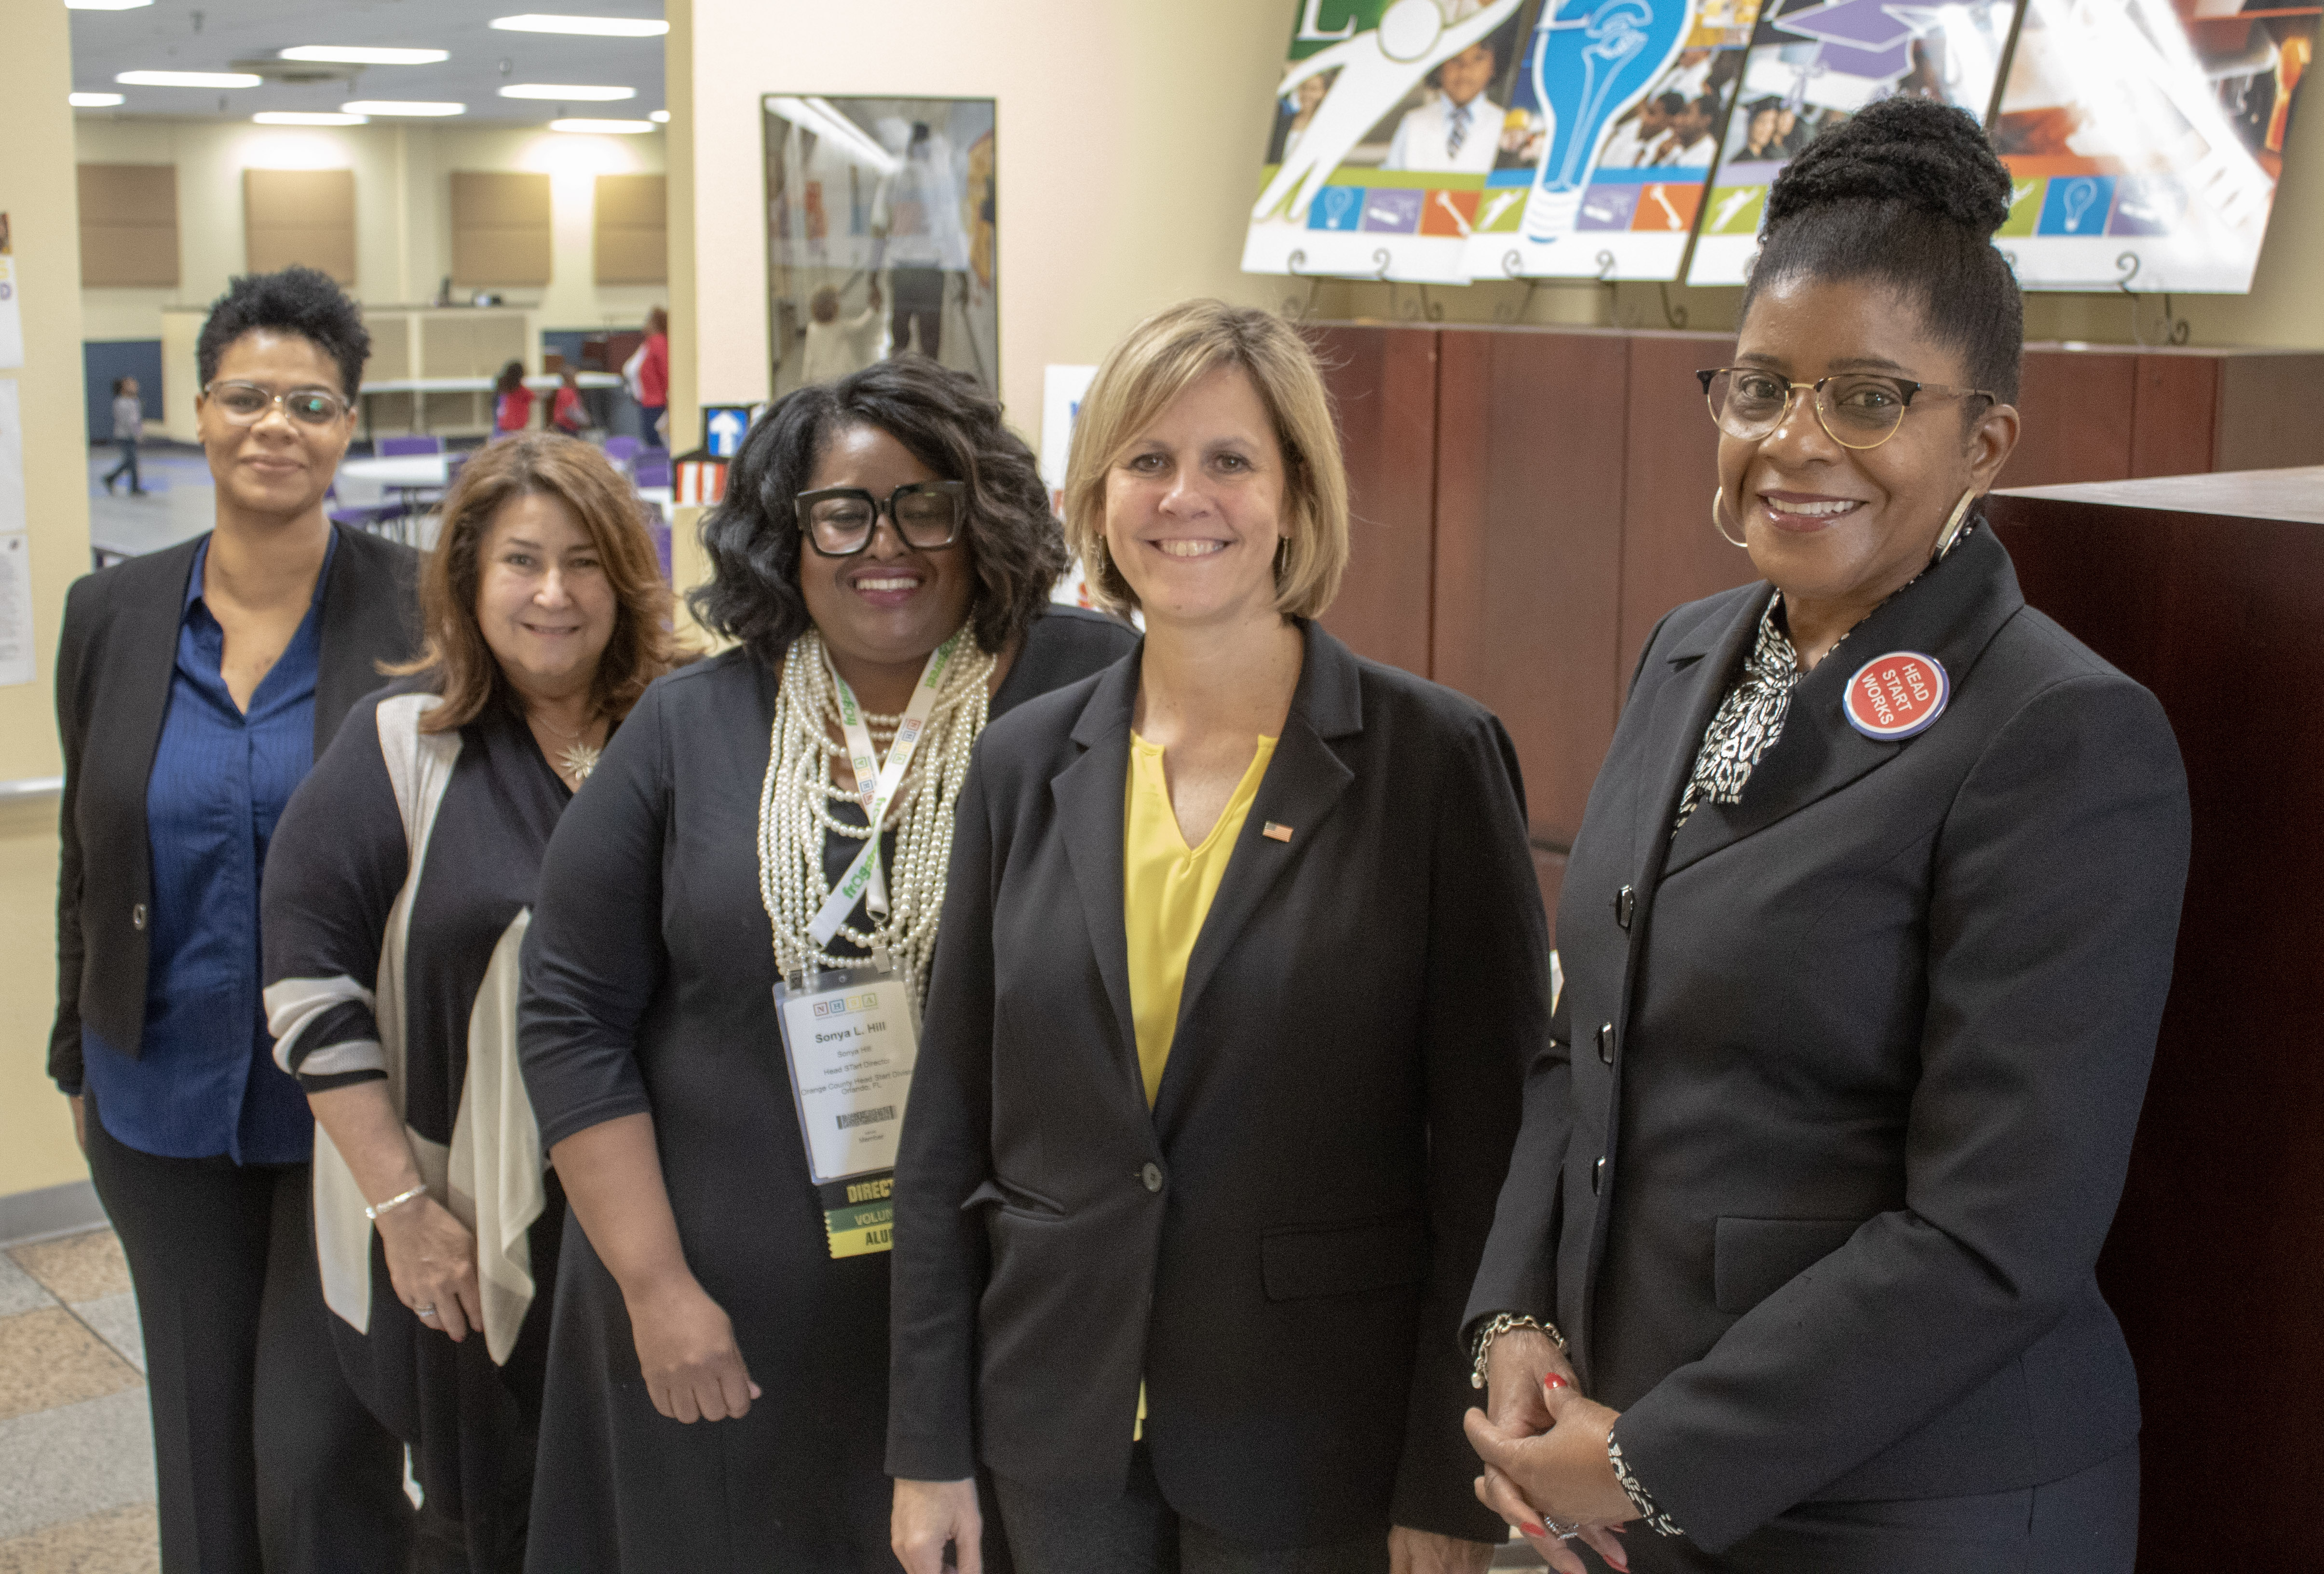 Cinco miembros del personal de Head Start, todas mujeres, posan para una foto paradas formando una línea diagonal. Están sonriendo dentro de un entorno de oficina.